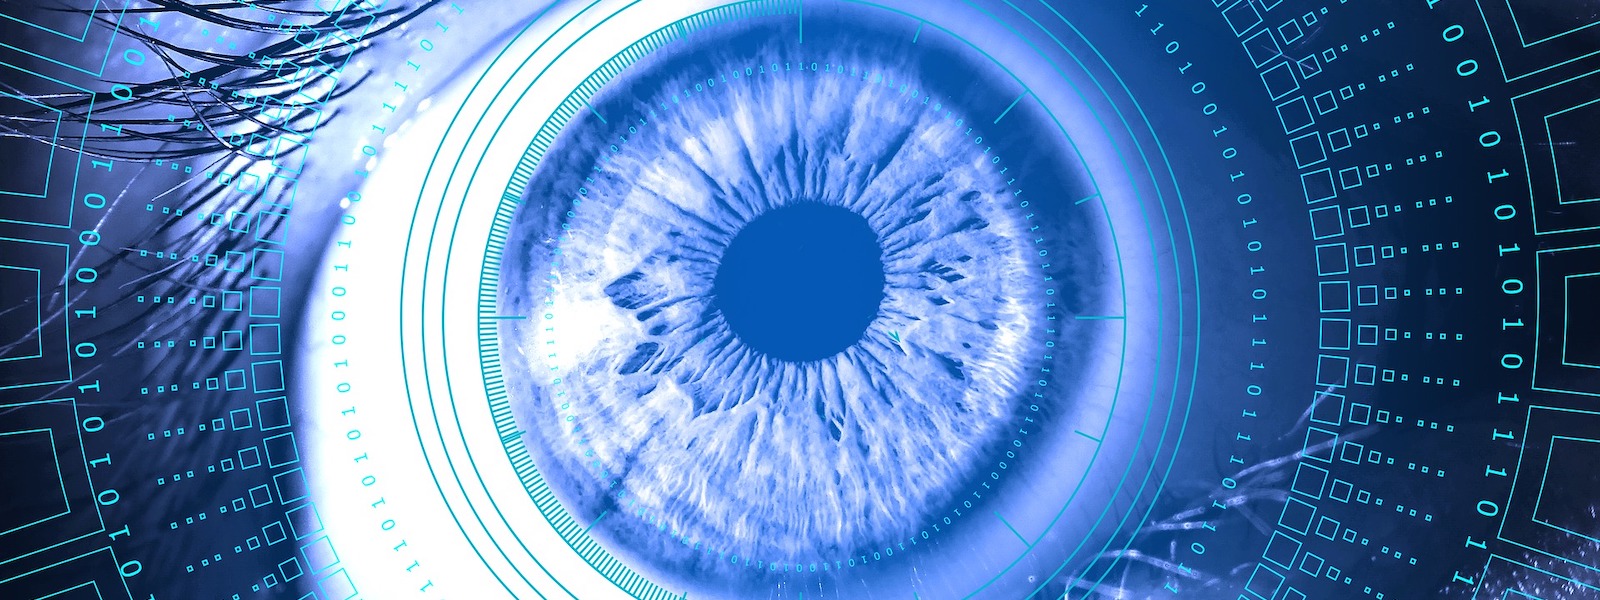 eye with overlay of data